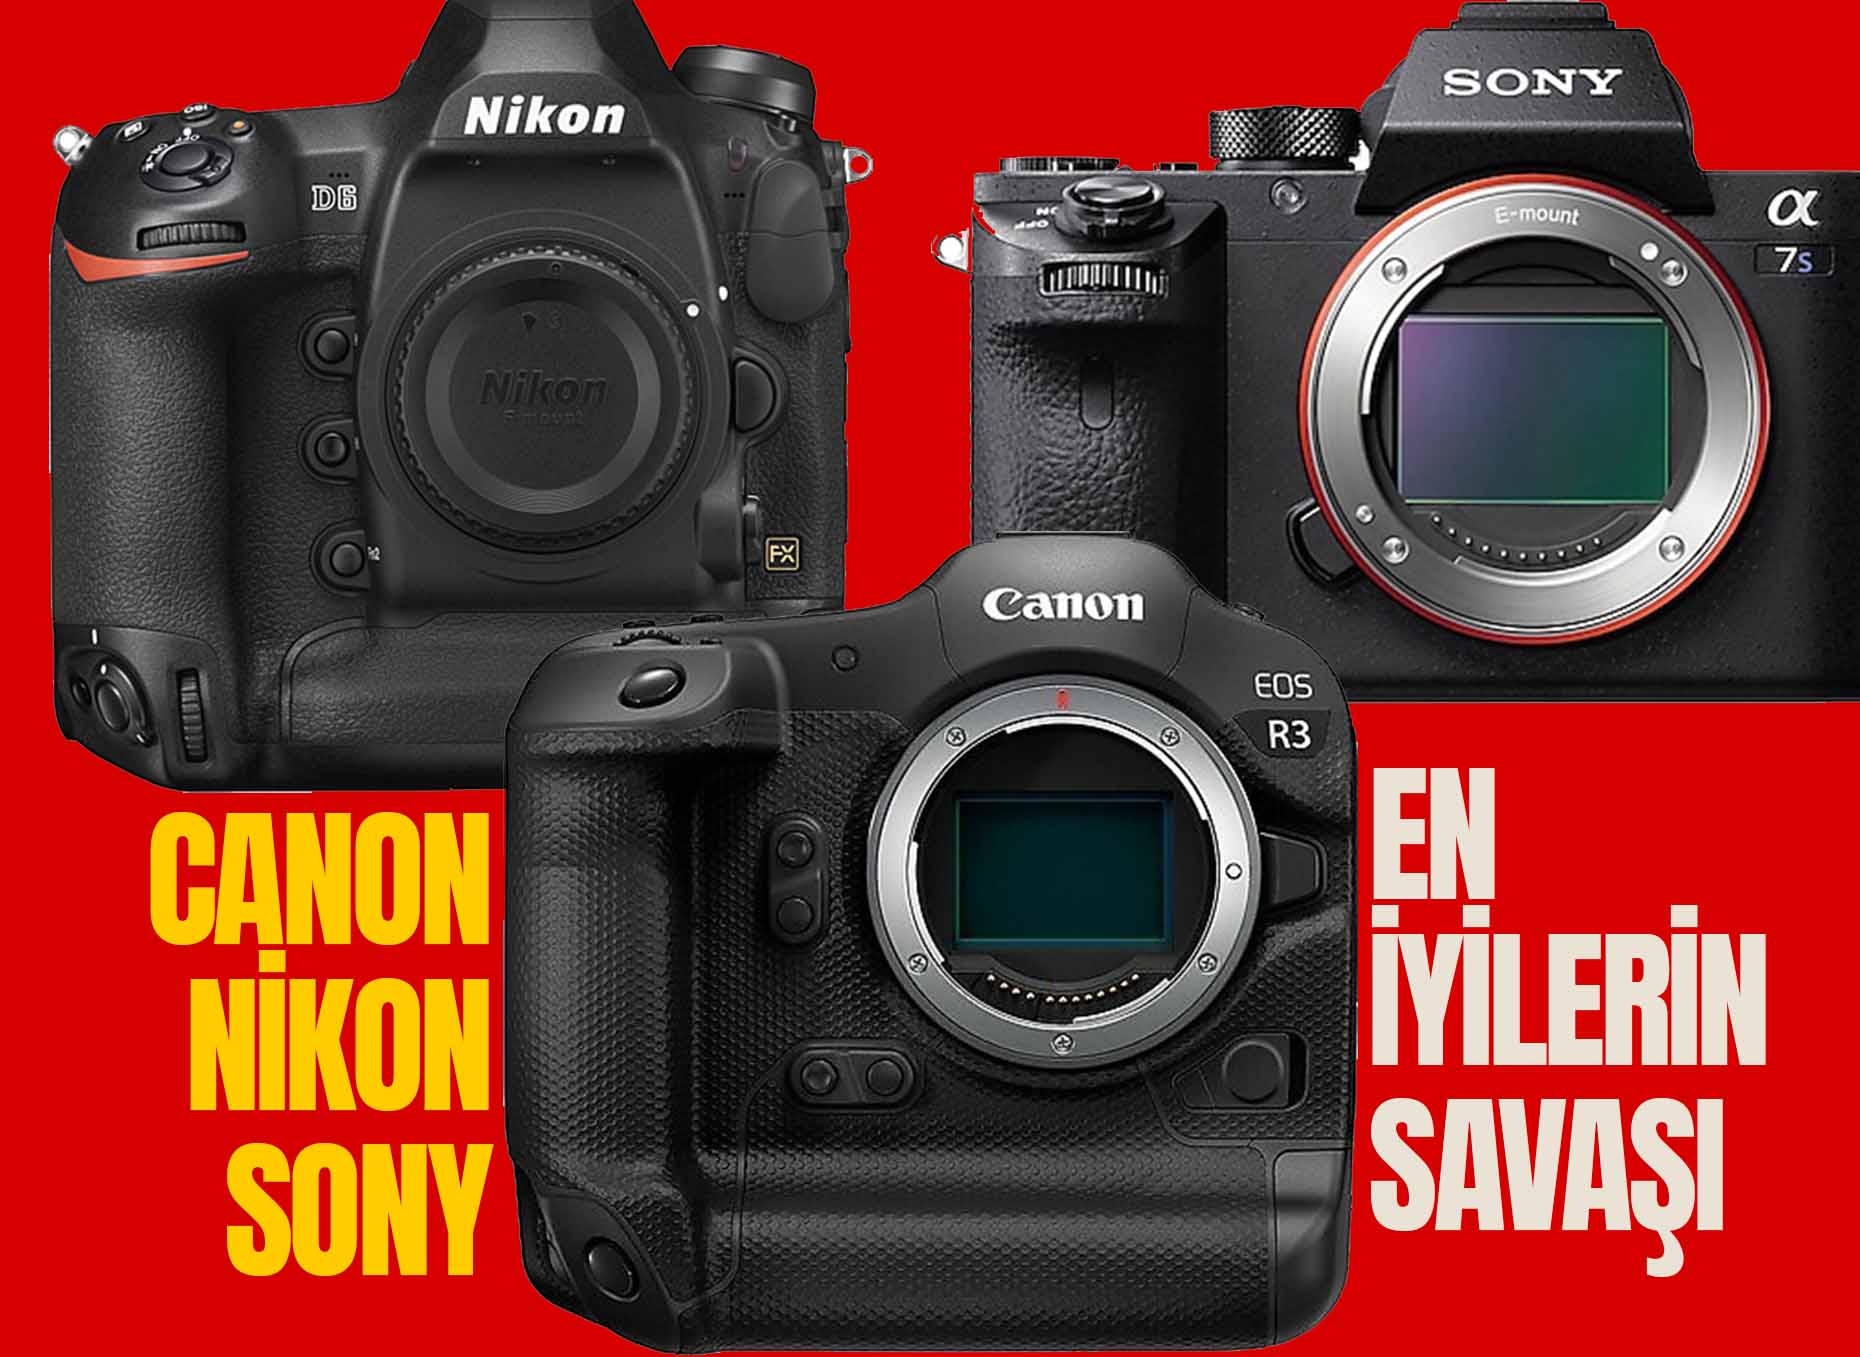 En İyilerin Savaşı: Canon EOS R3, Nikon D6, Sony A7S III - Seçmenize Yardımcı Olacak 30 Detay